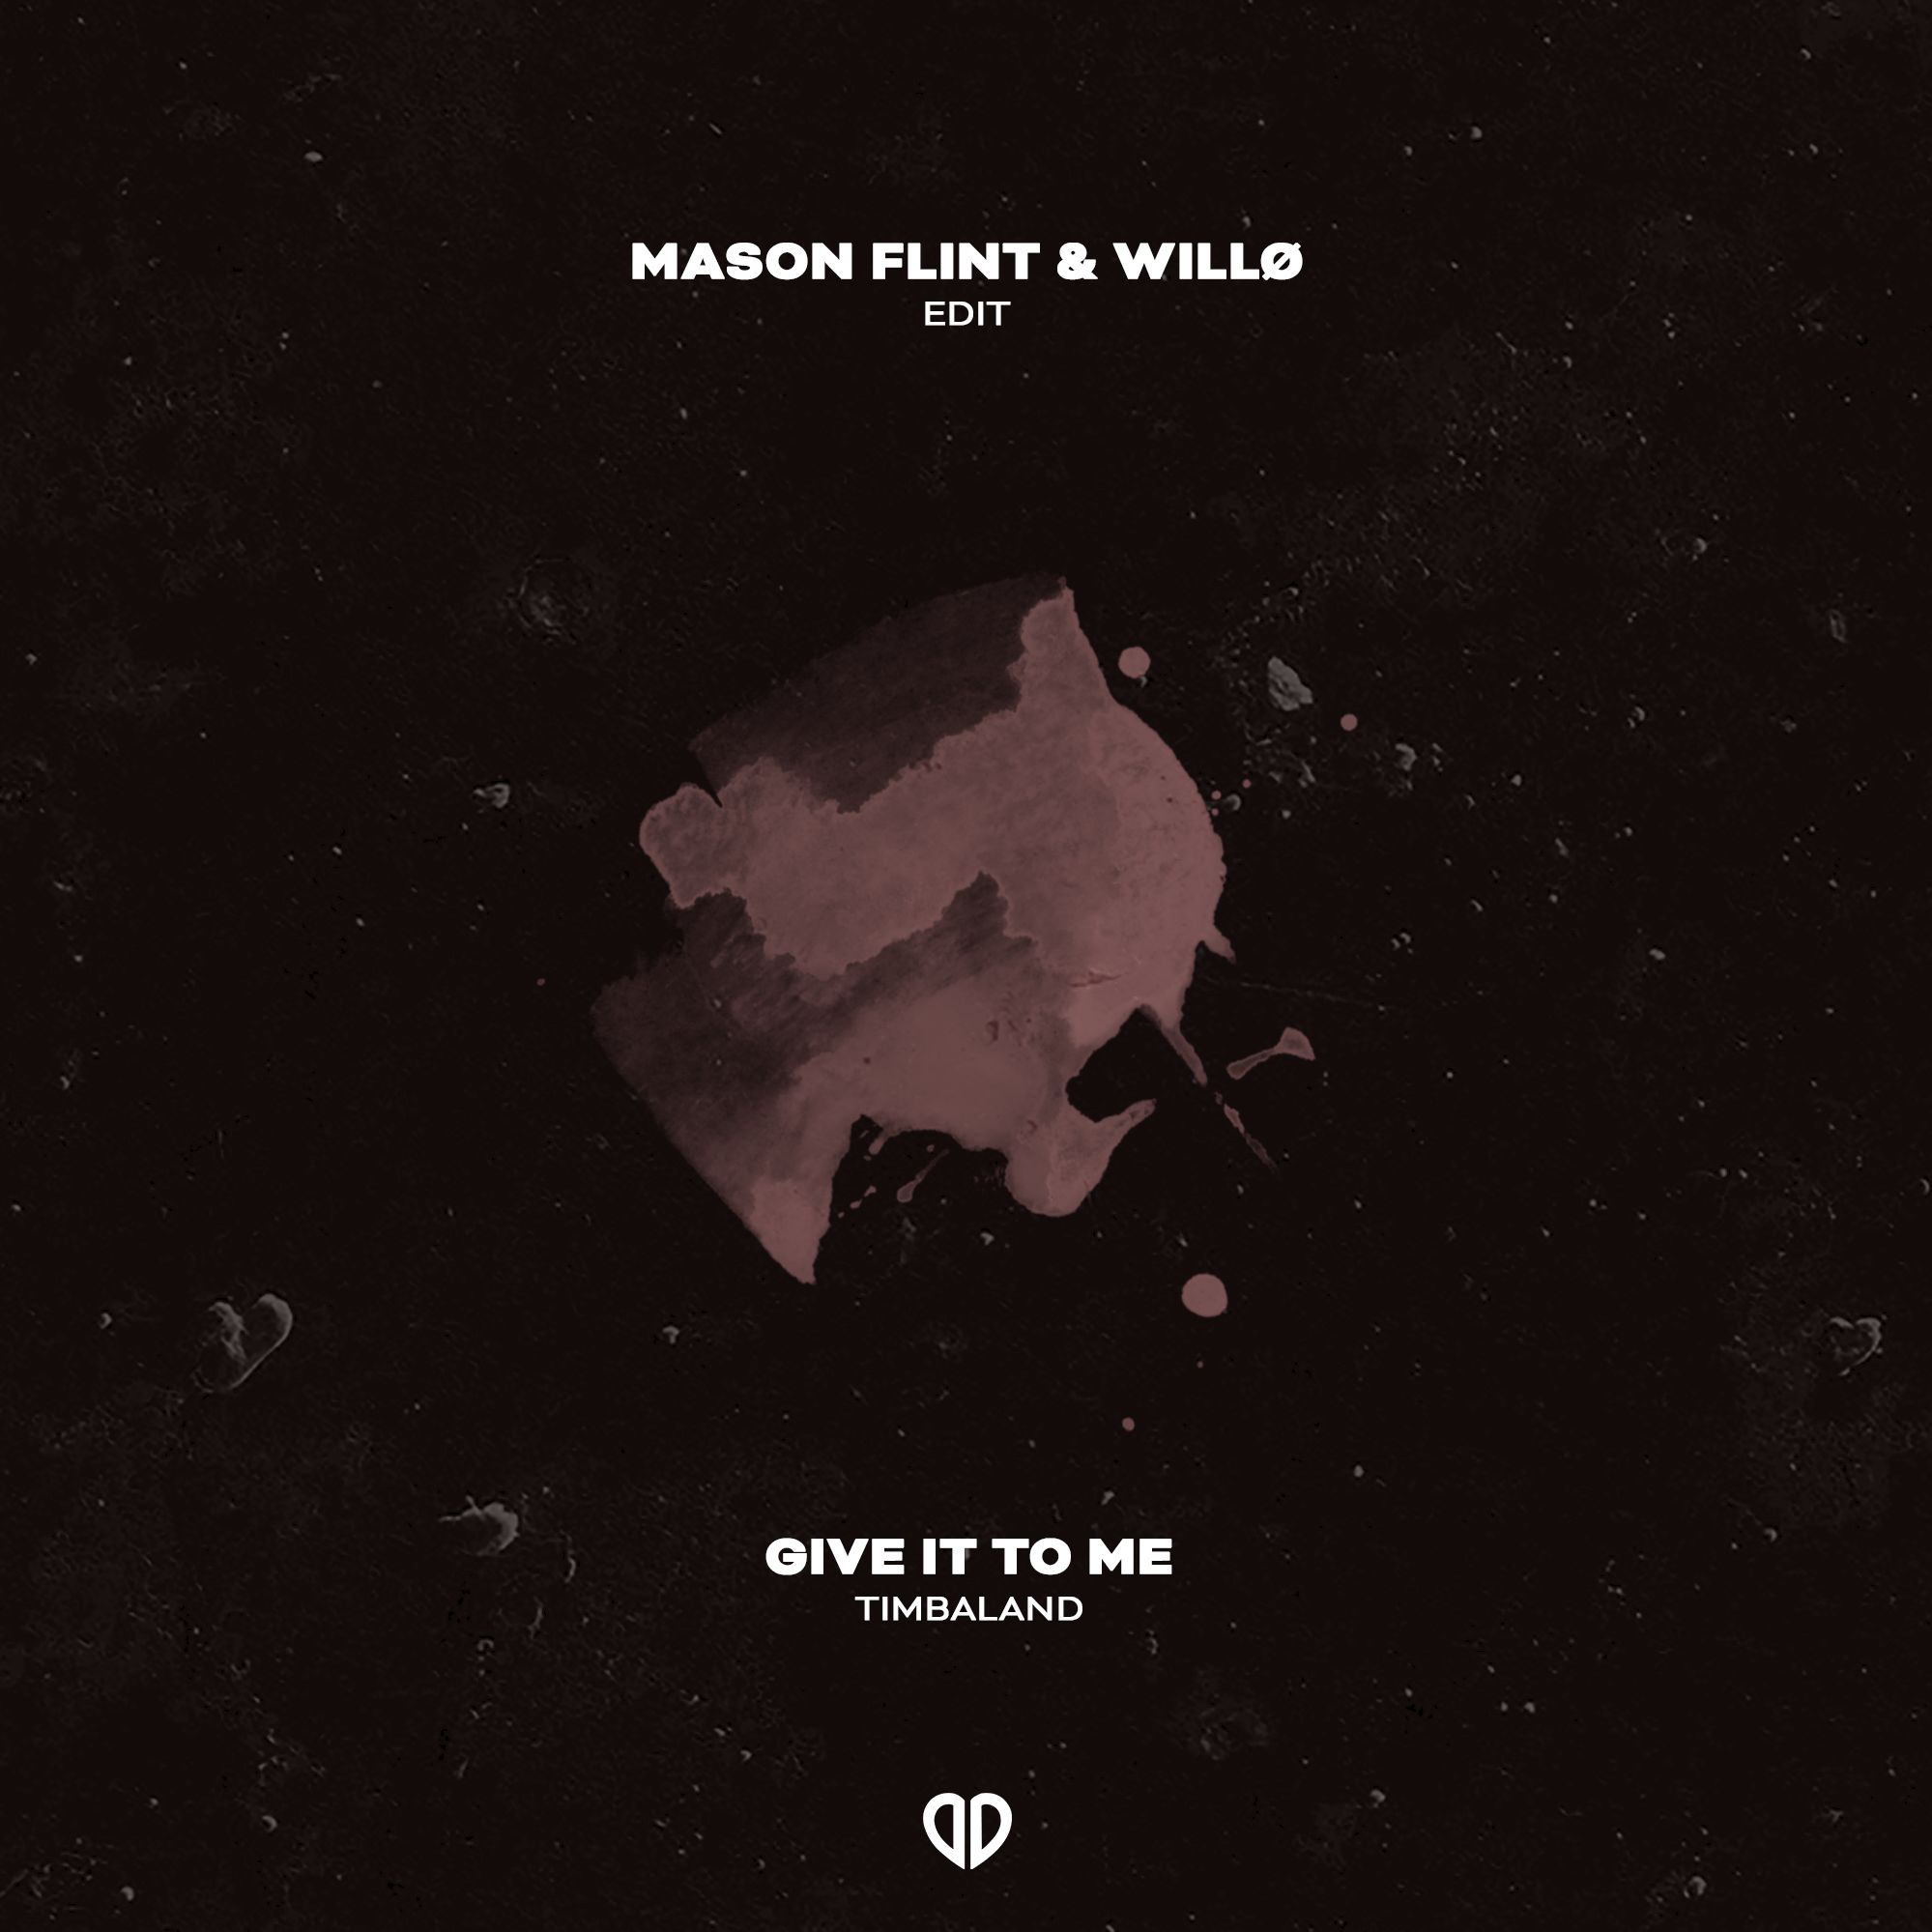 ഡൗൺലോഡ് Timbaland - Give It To Me (Mason Flint & Willo Edit) [DropUnited Exclusive]